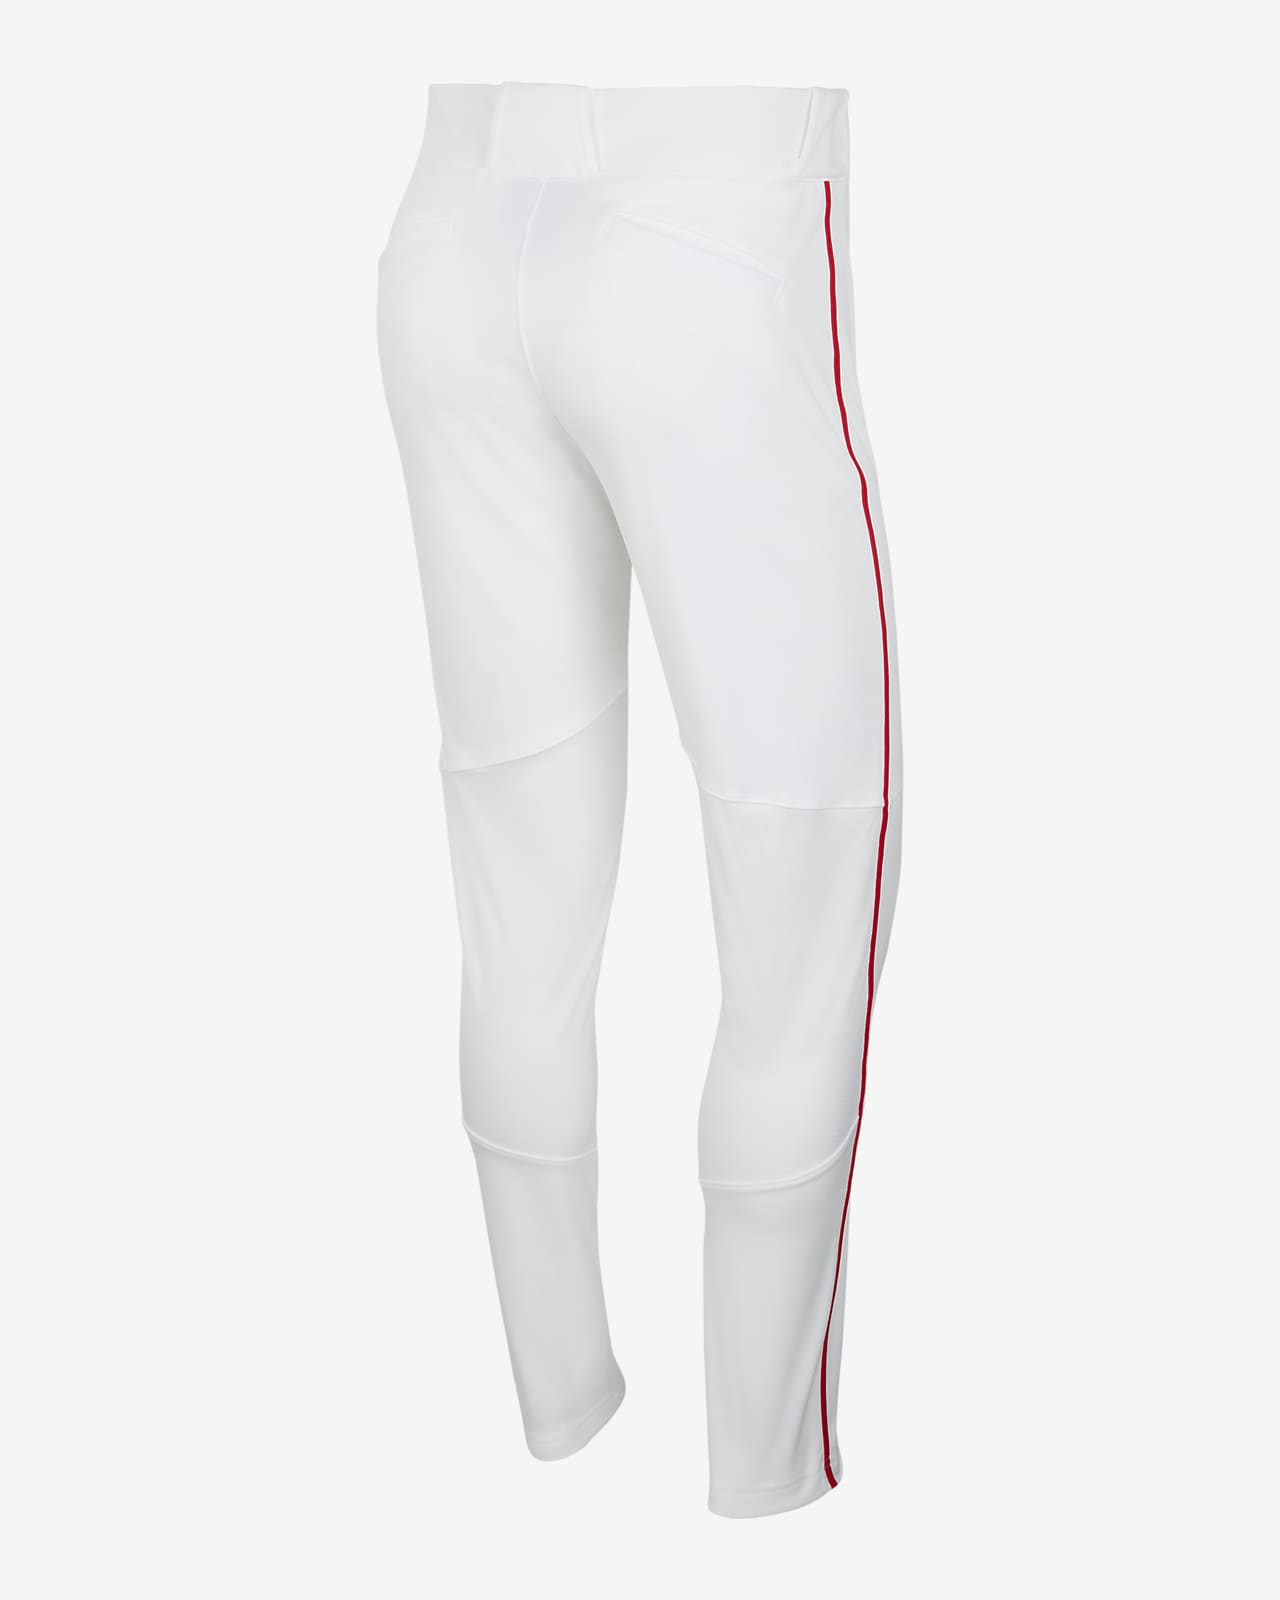 Men's Nike Vapor Select High Baseball Pants